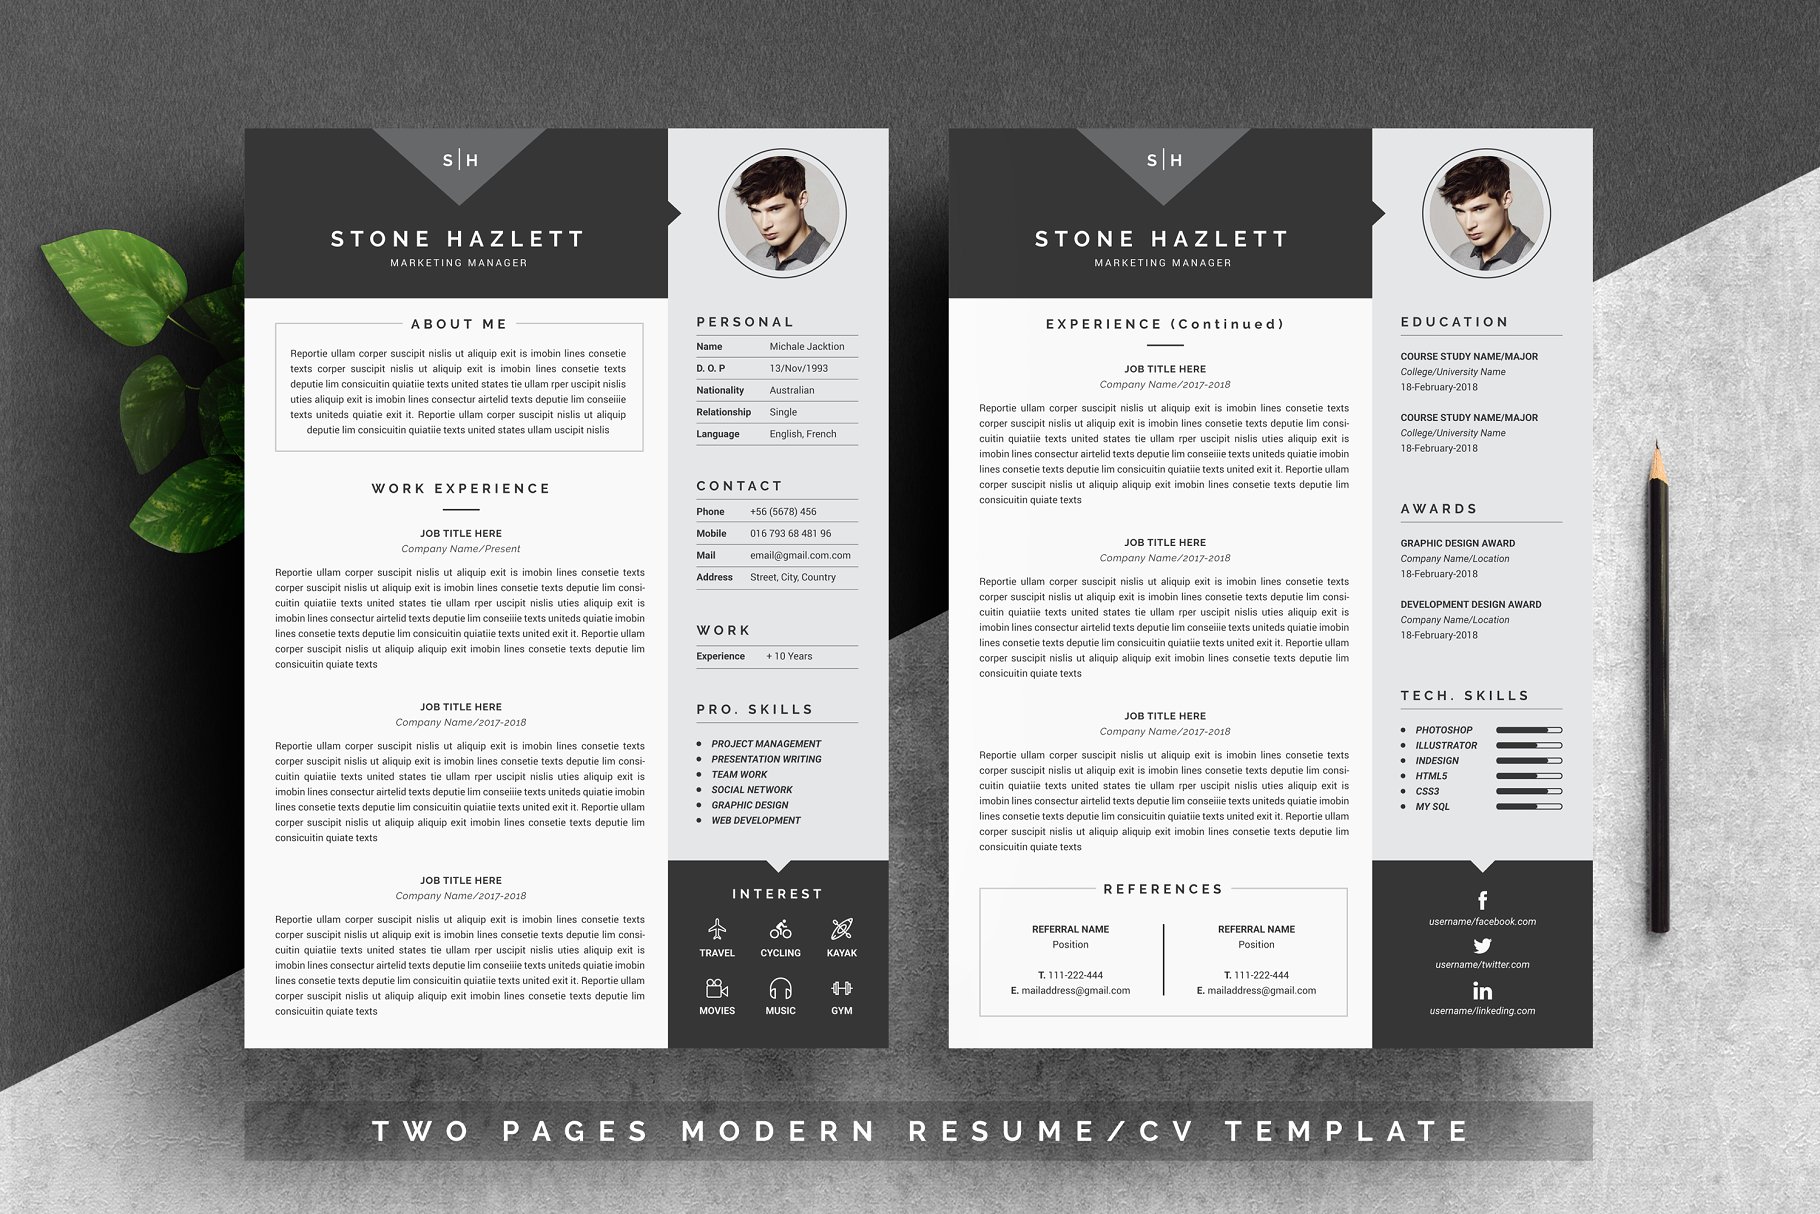 现代个人简历模板 Modern Resume Template 4 Pages插图(1)